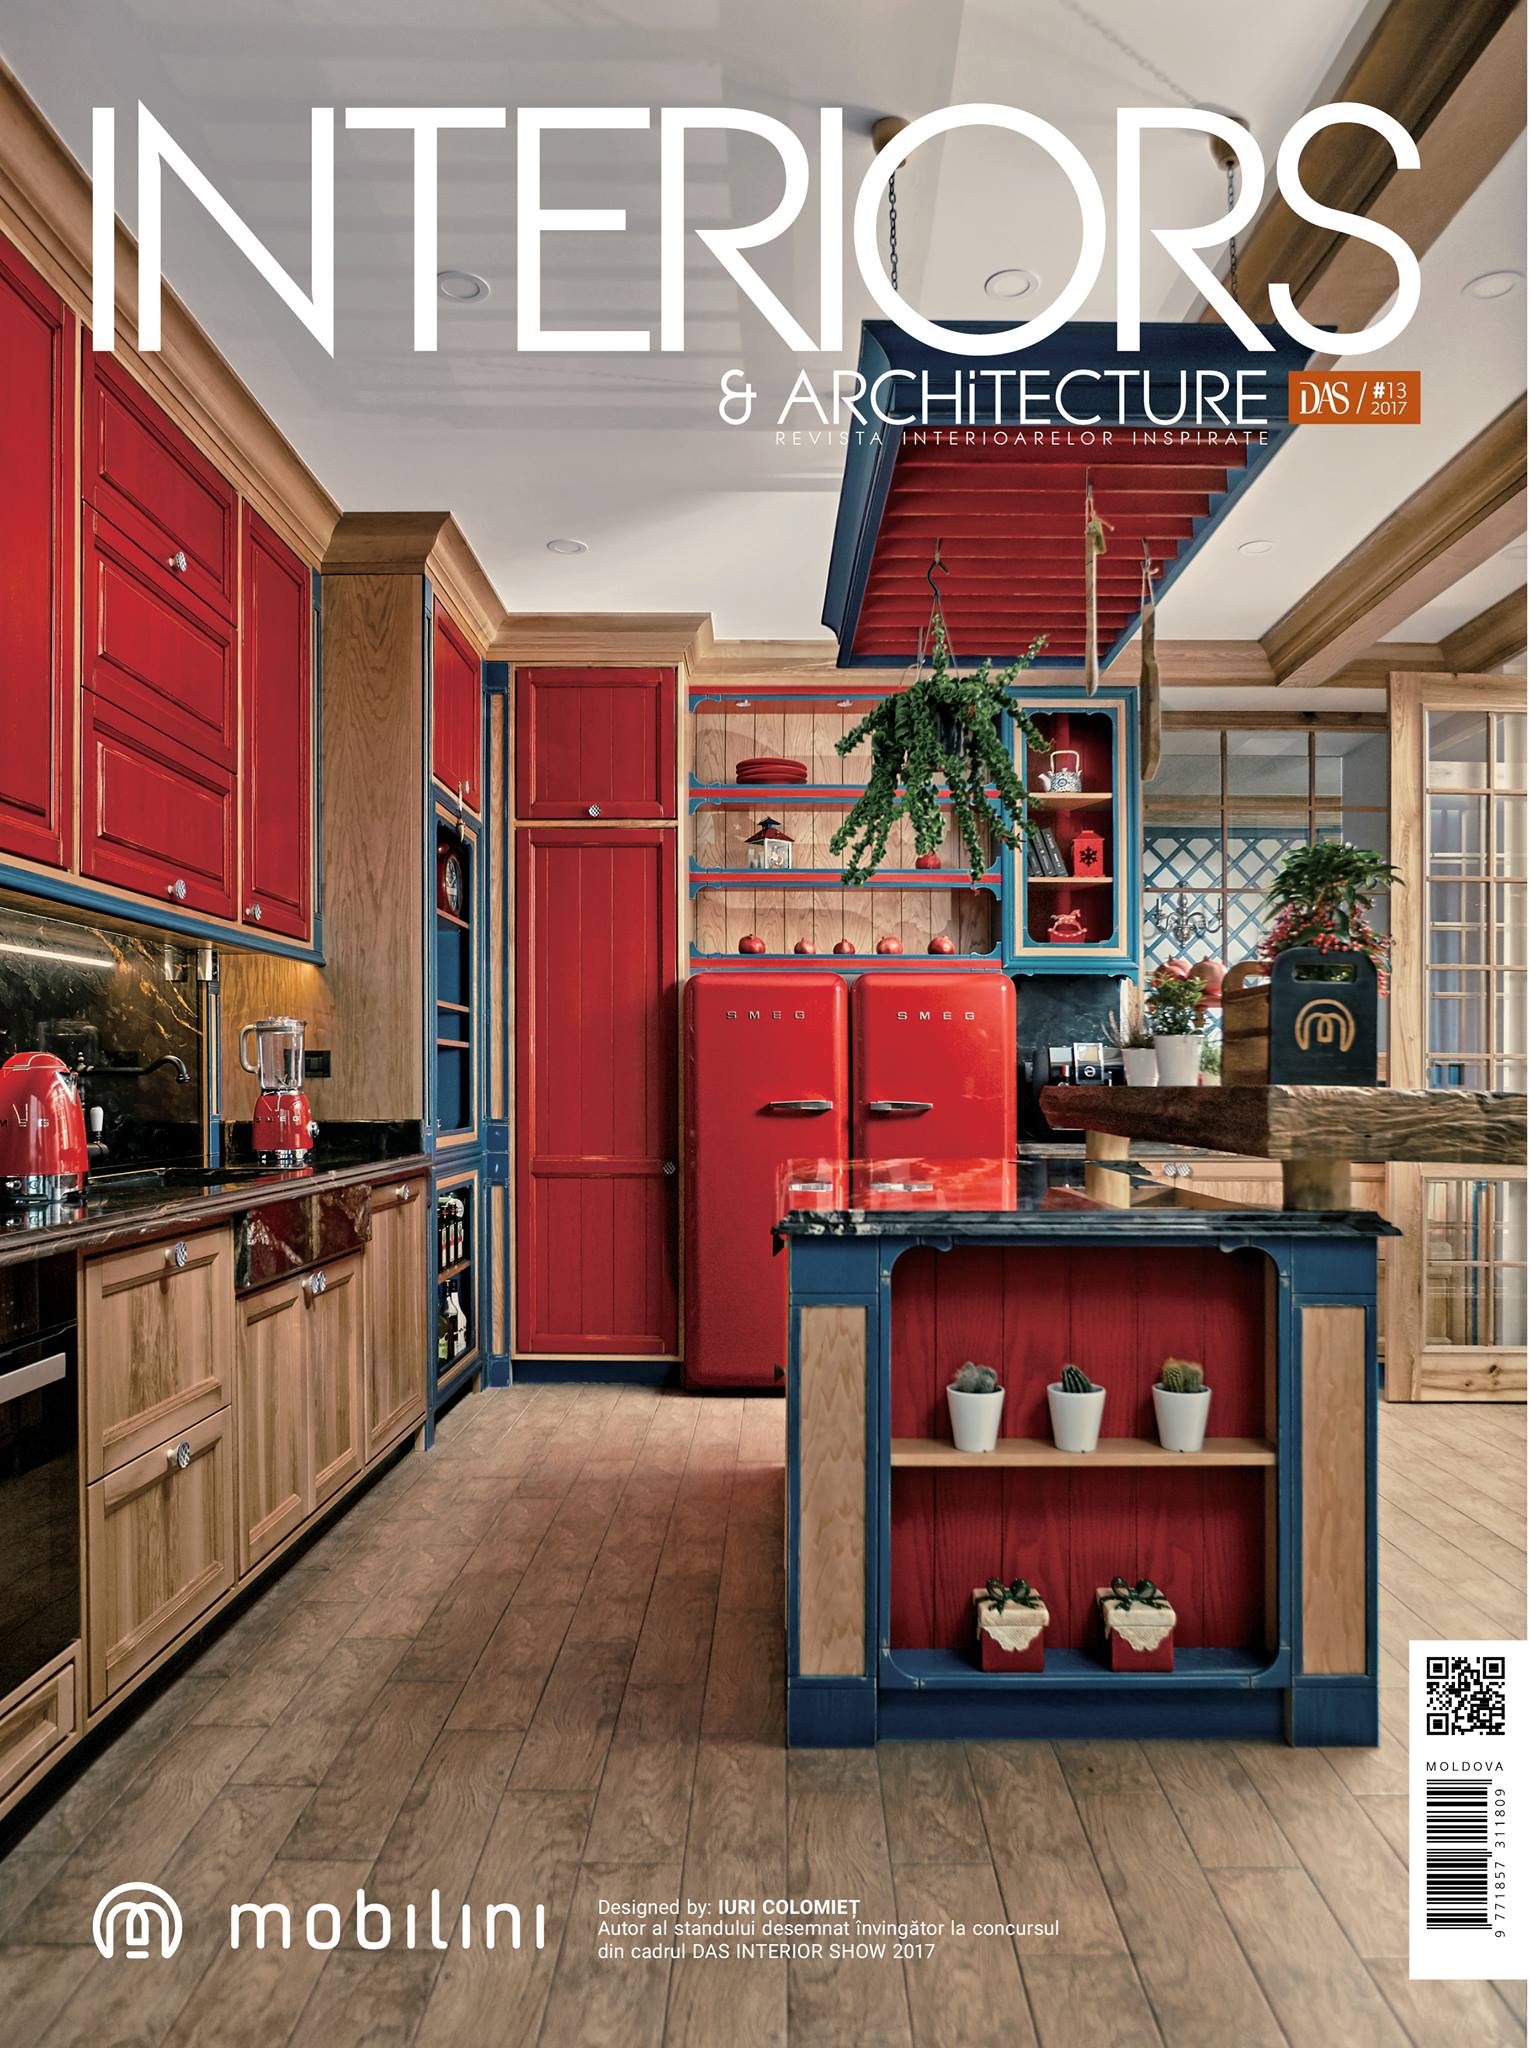 Interiors & Architecture